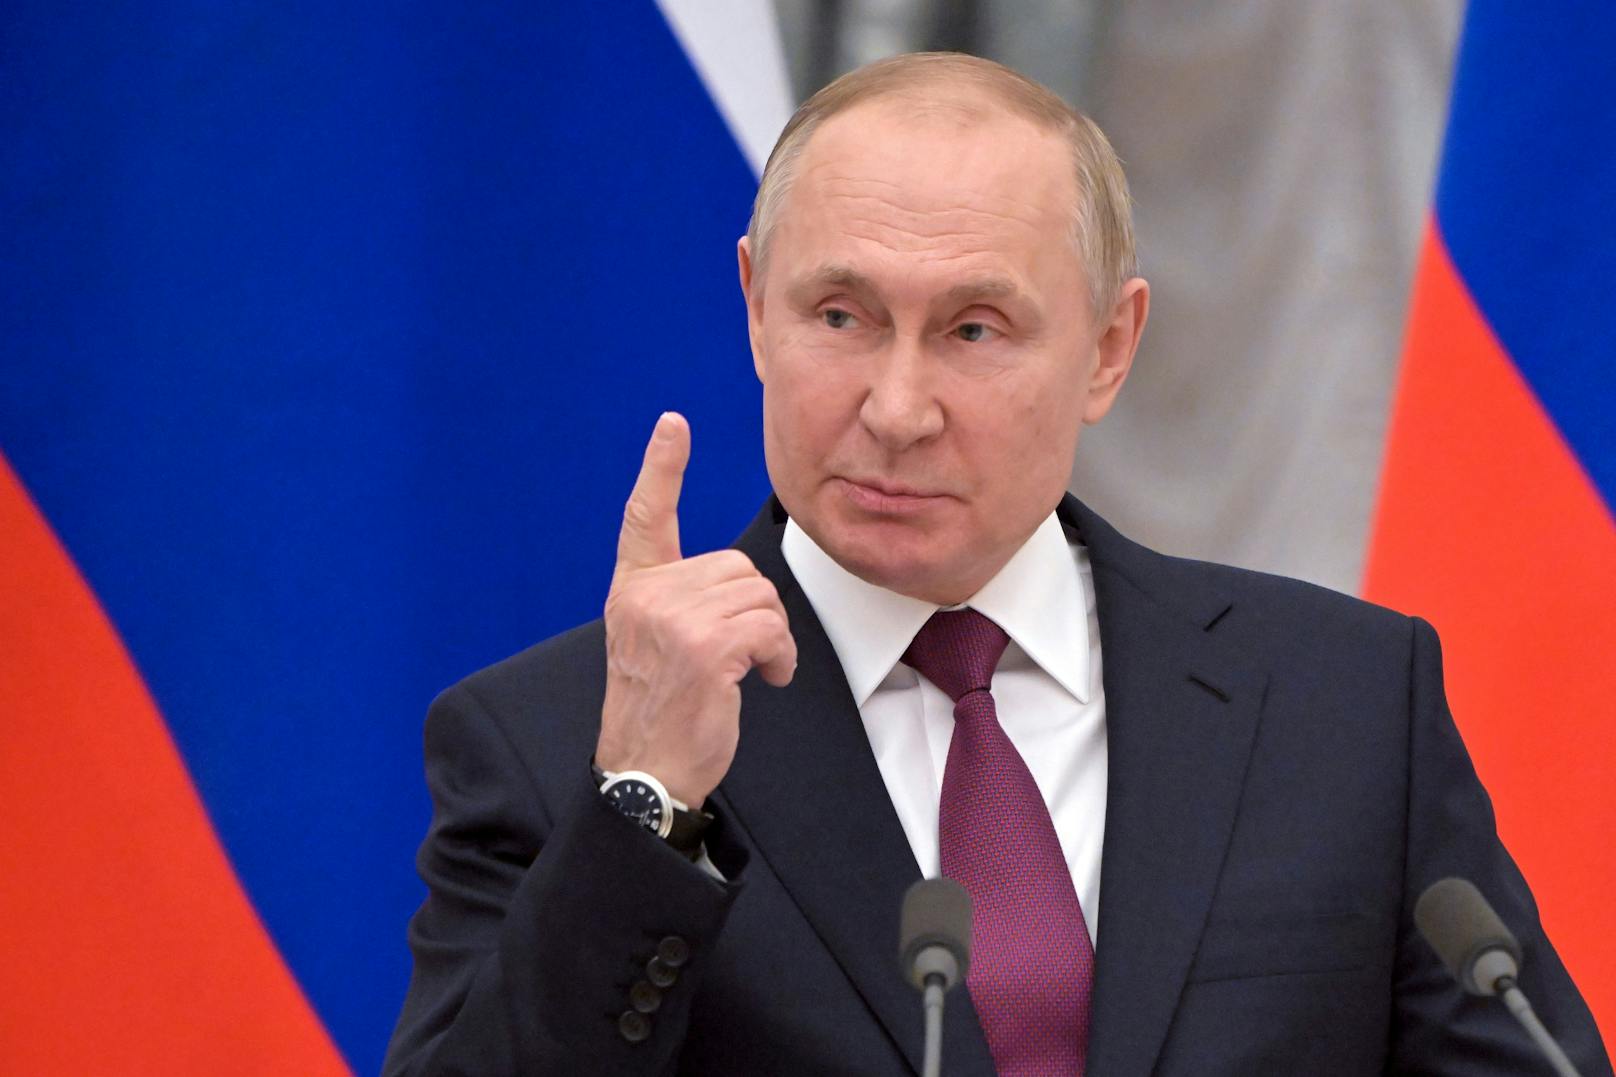 Neue Putin-Vorwürfe – "Glaubt seine eigenen Lügen"